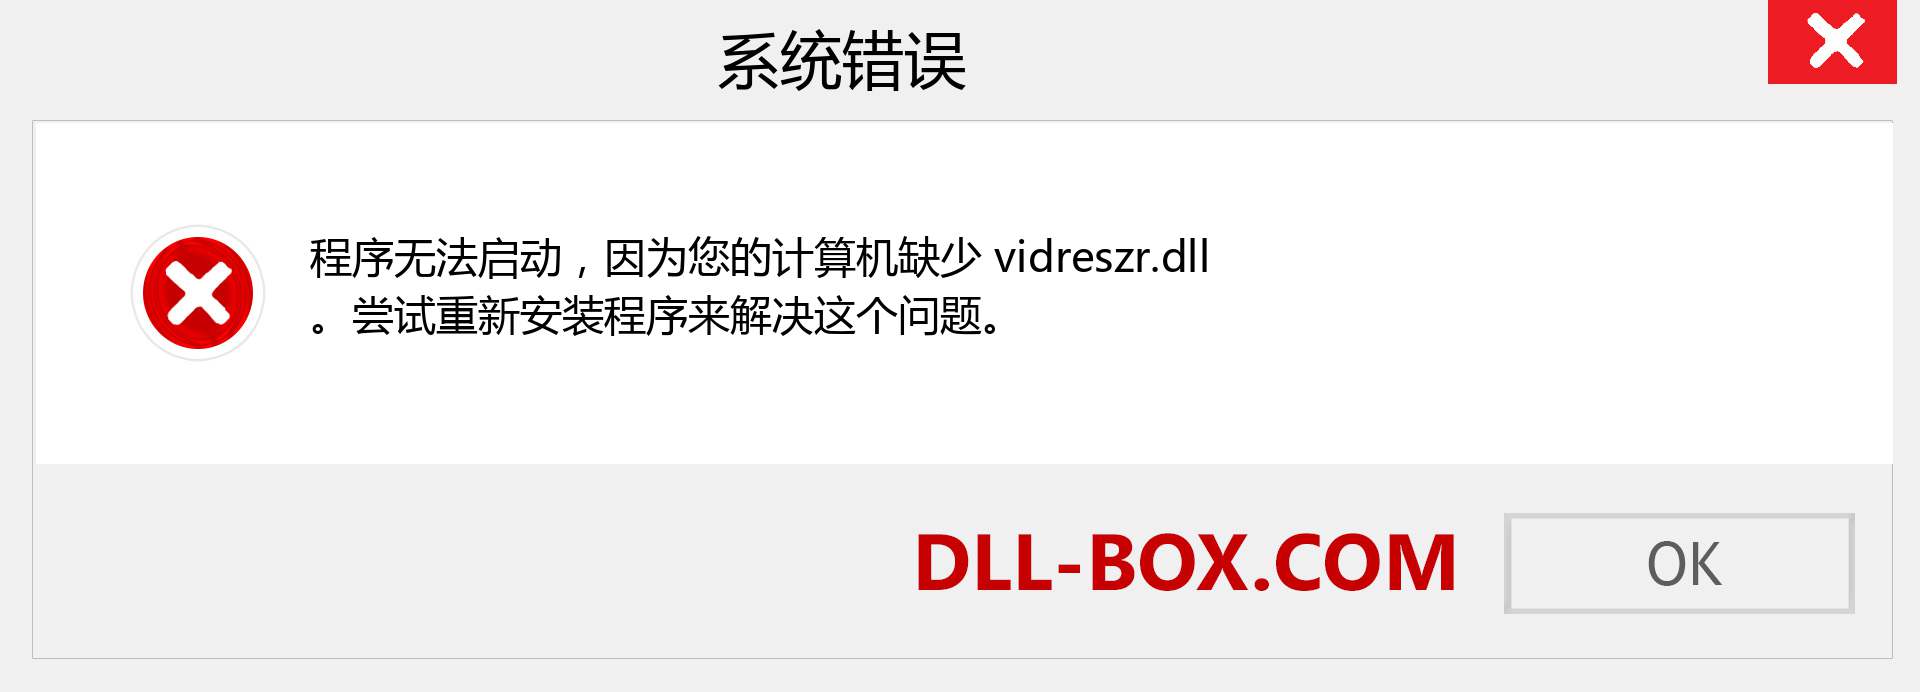 vidreszr.dll 文件丢失？。 适用于 Windows 7、8、10 的下载 - 修复 Windows、照片、图像上的 vidreszr dll 丢失错误